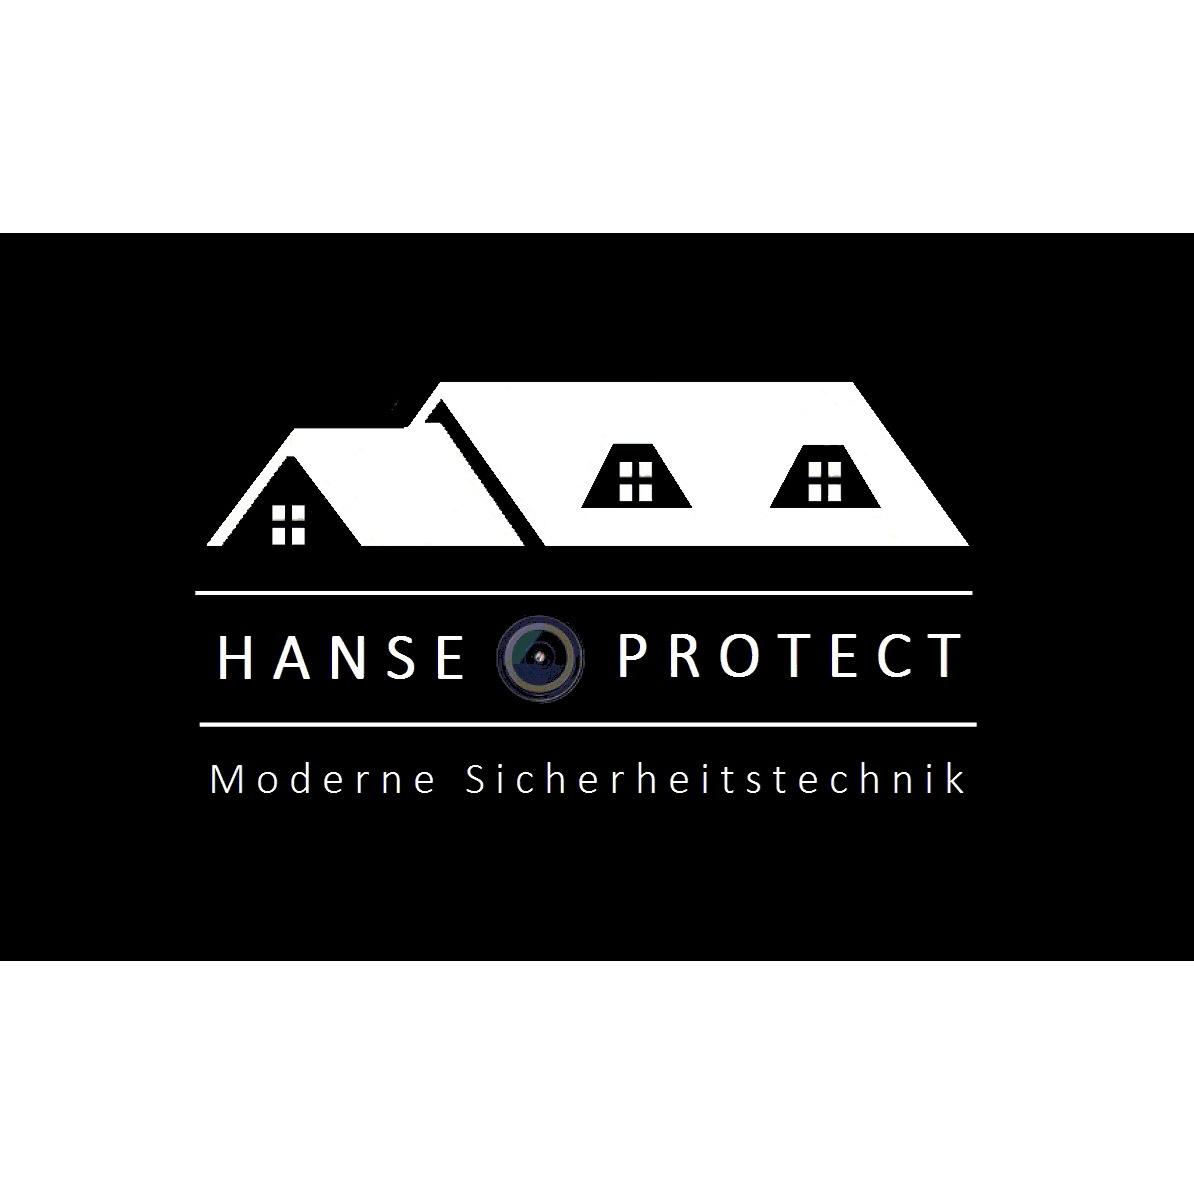 Hanse Protect Inh. Carsten Schlichting in Hamburg - Logo